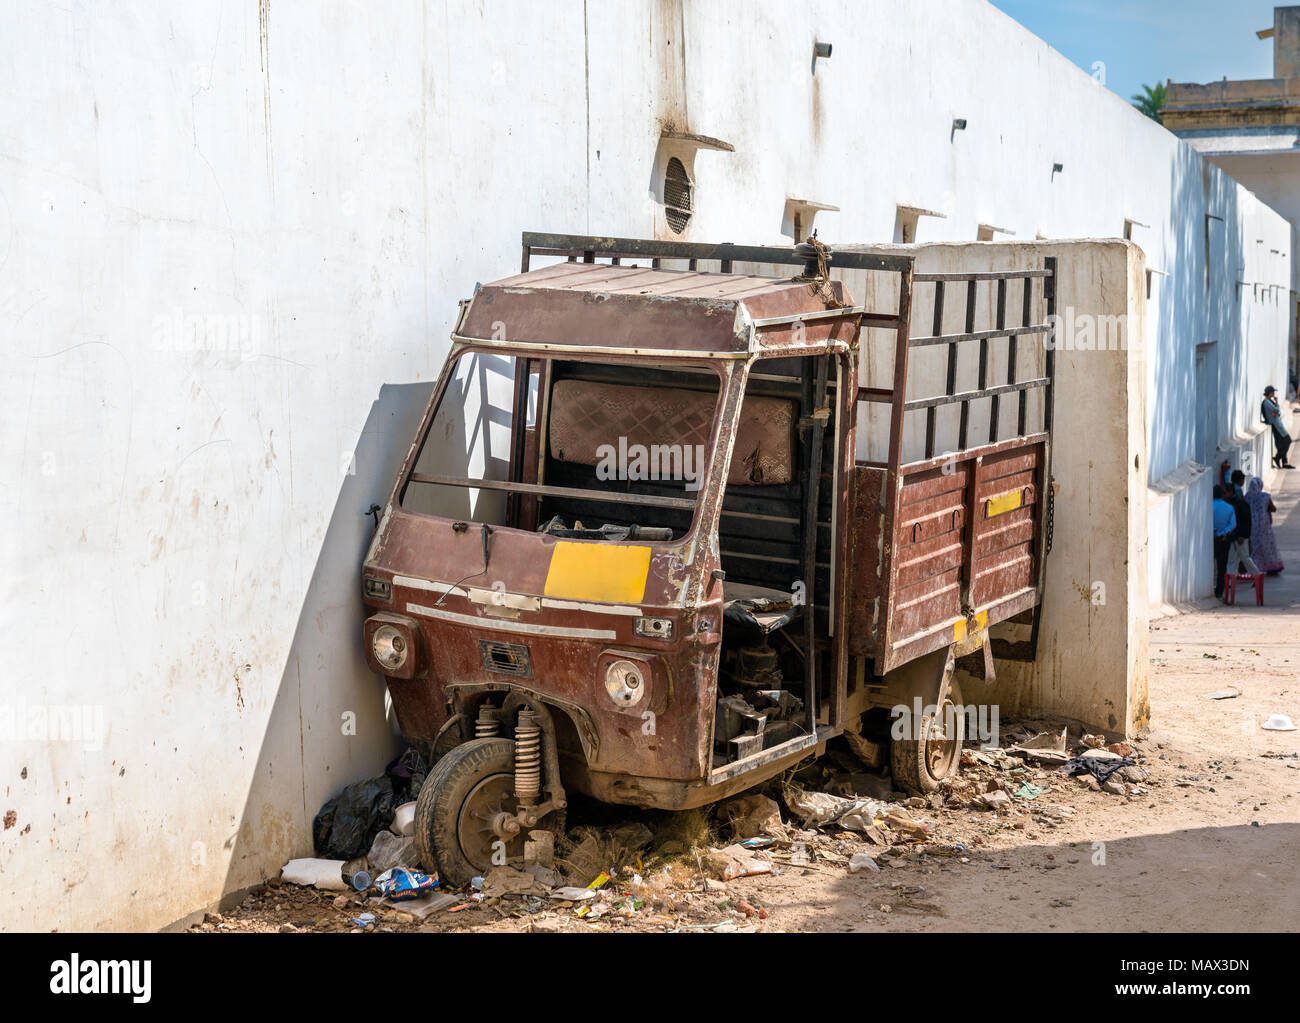 Abandoned auto rickshaw in Jaipur, India Stock Photo